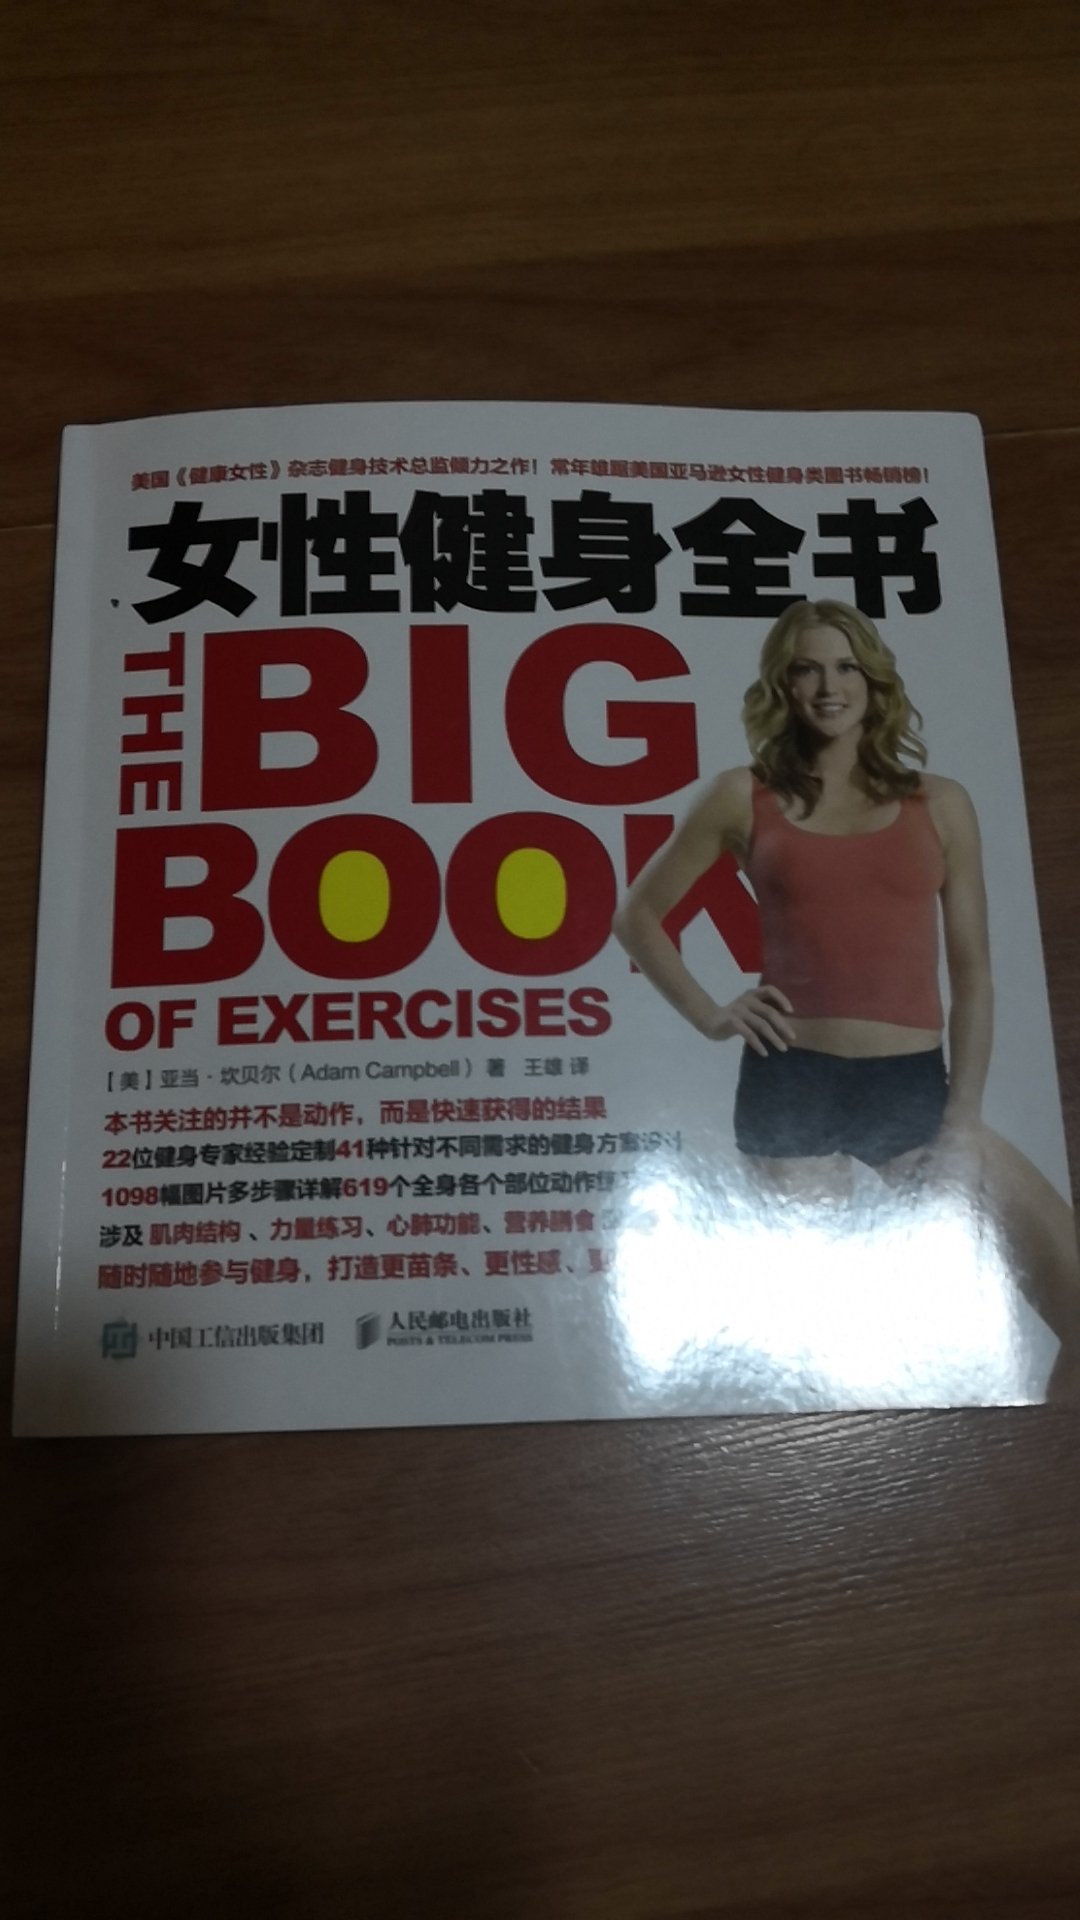 这本书的质量真的很好，刚刚看了几页，想去健身房健身，先学习下健身的步骤。